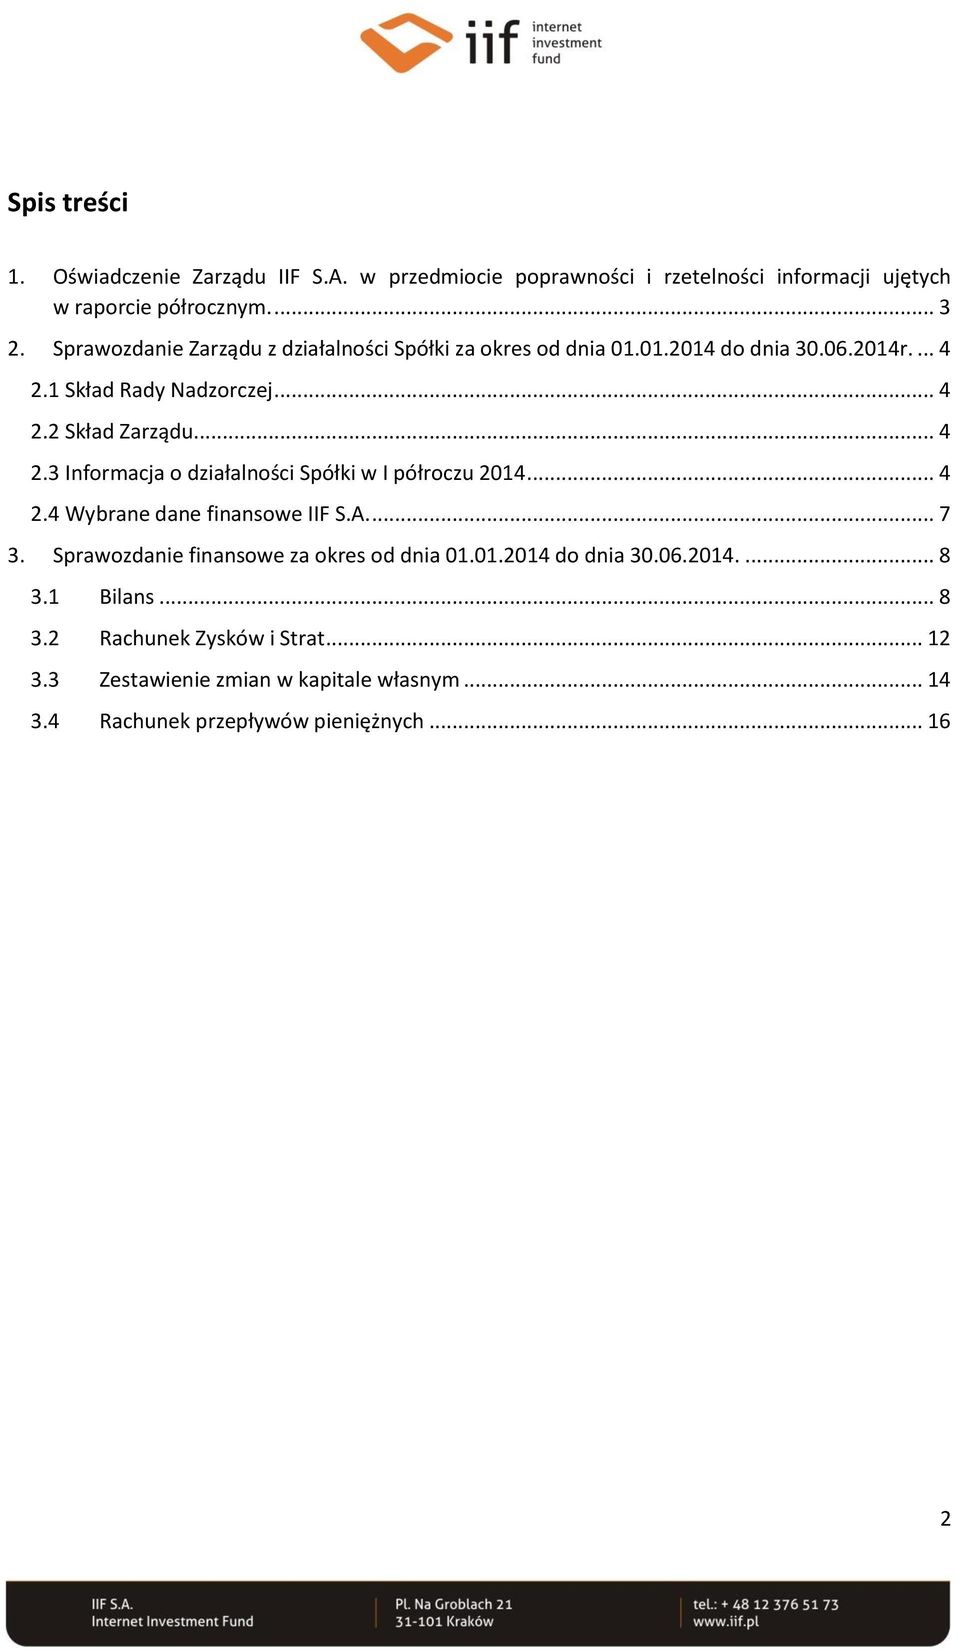 .. 4 2.4 Wybrane dane finansowe IIF S.A.... 7 3. Sprawozdanie finansowe za okres od dnia 01.01.2014 do dnia 30.06.2014.... 8 3.